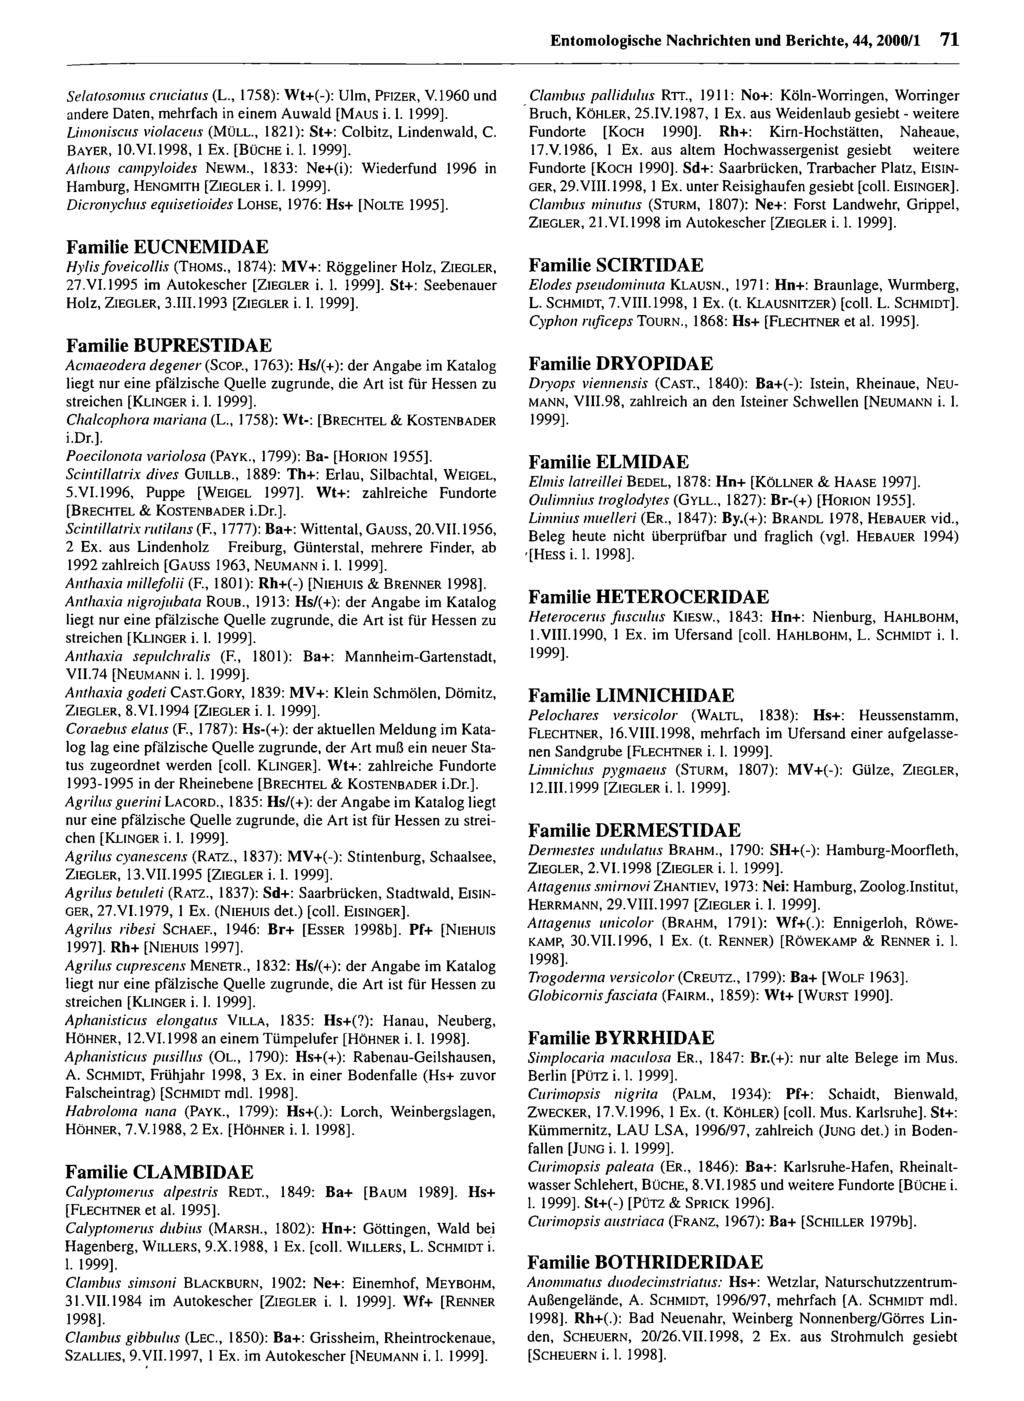 Entomologische Nachrichten und Berichte; download Entomologische unter www.biologiezentrum.at Nachrichten und Berichte, 44, 2000/1 71 Selatosomus cruciatus (L., 1758): Wt+(-): Ulm, P f i z e r, V.